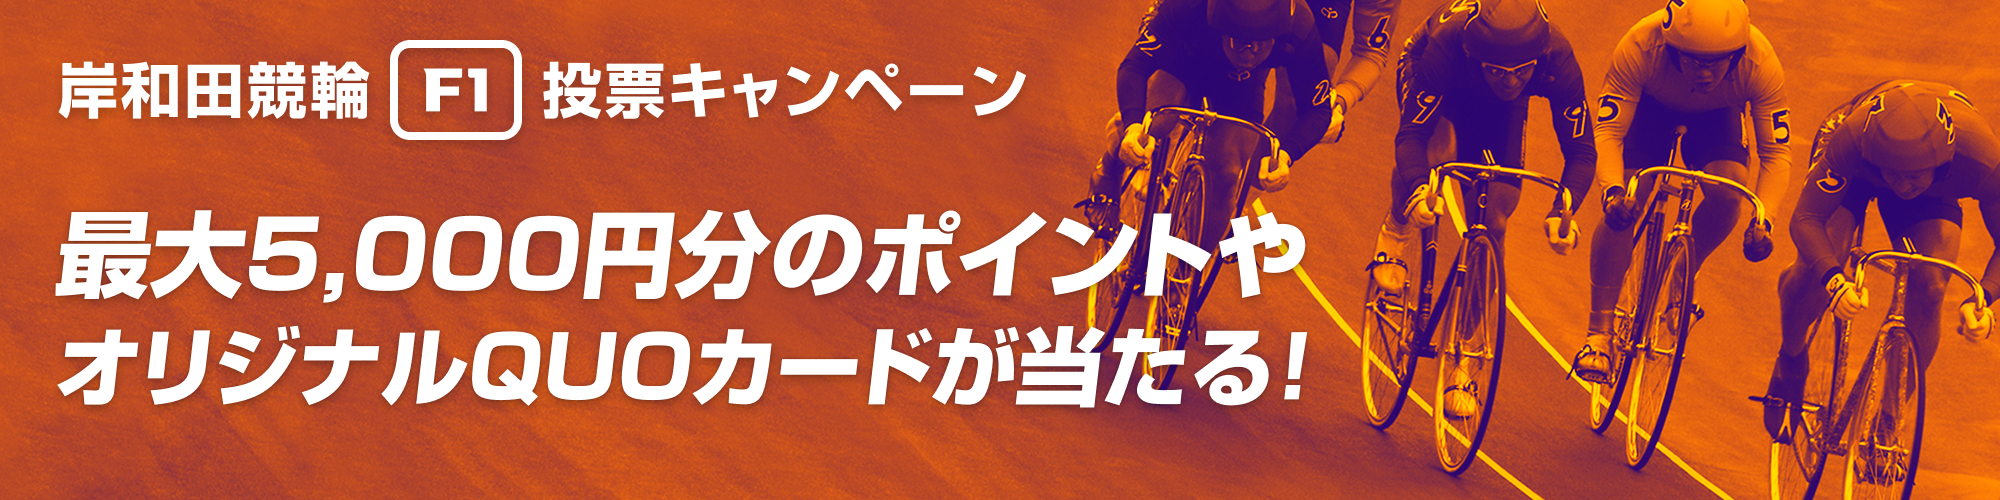 岸和田競輪投票キャンペーンバナー画像